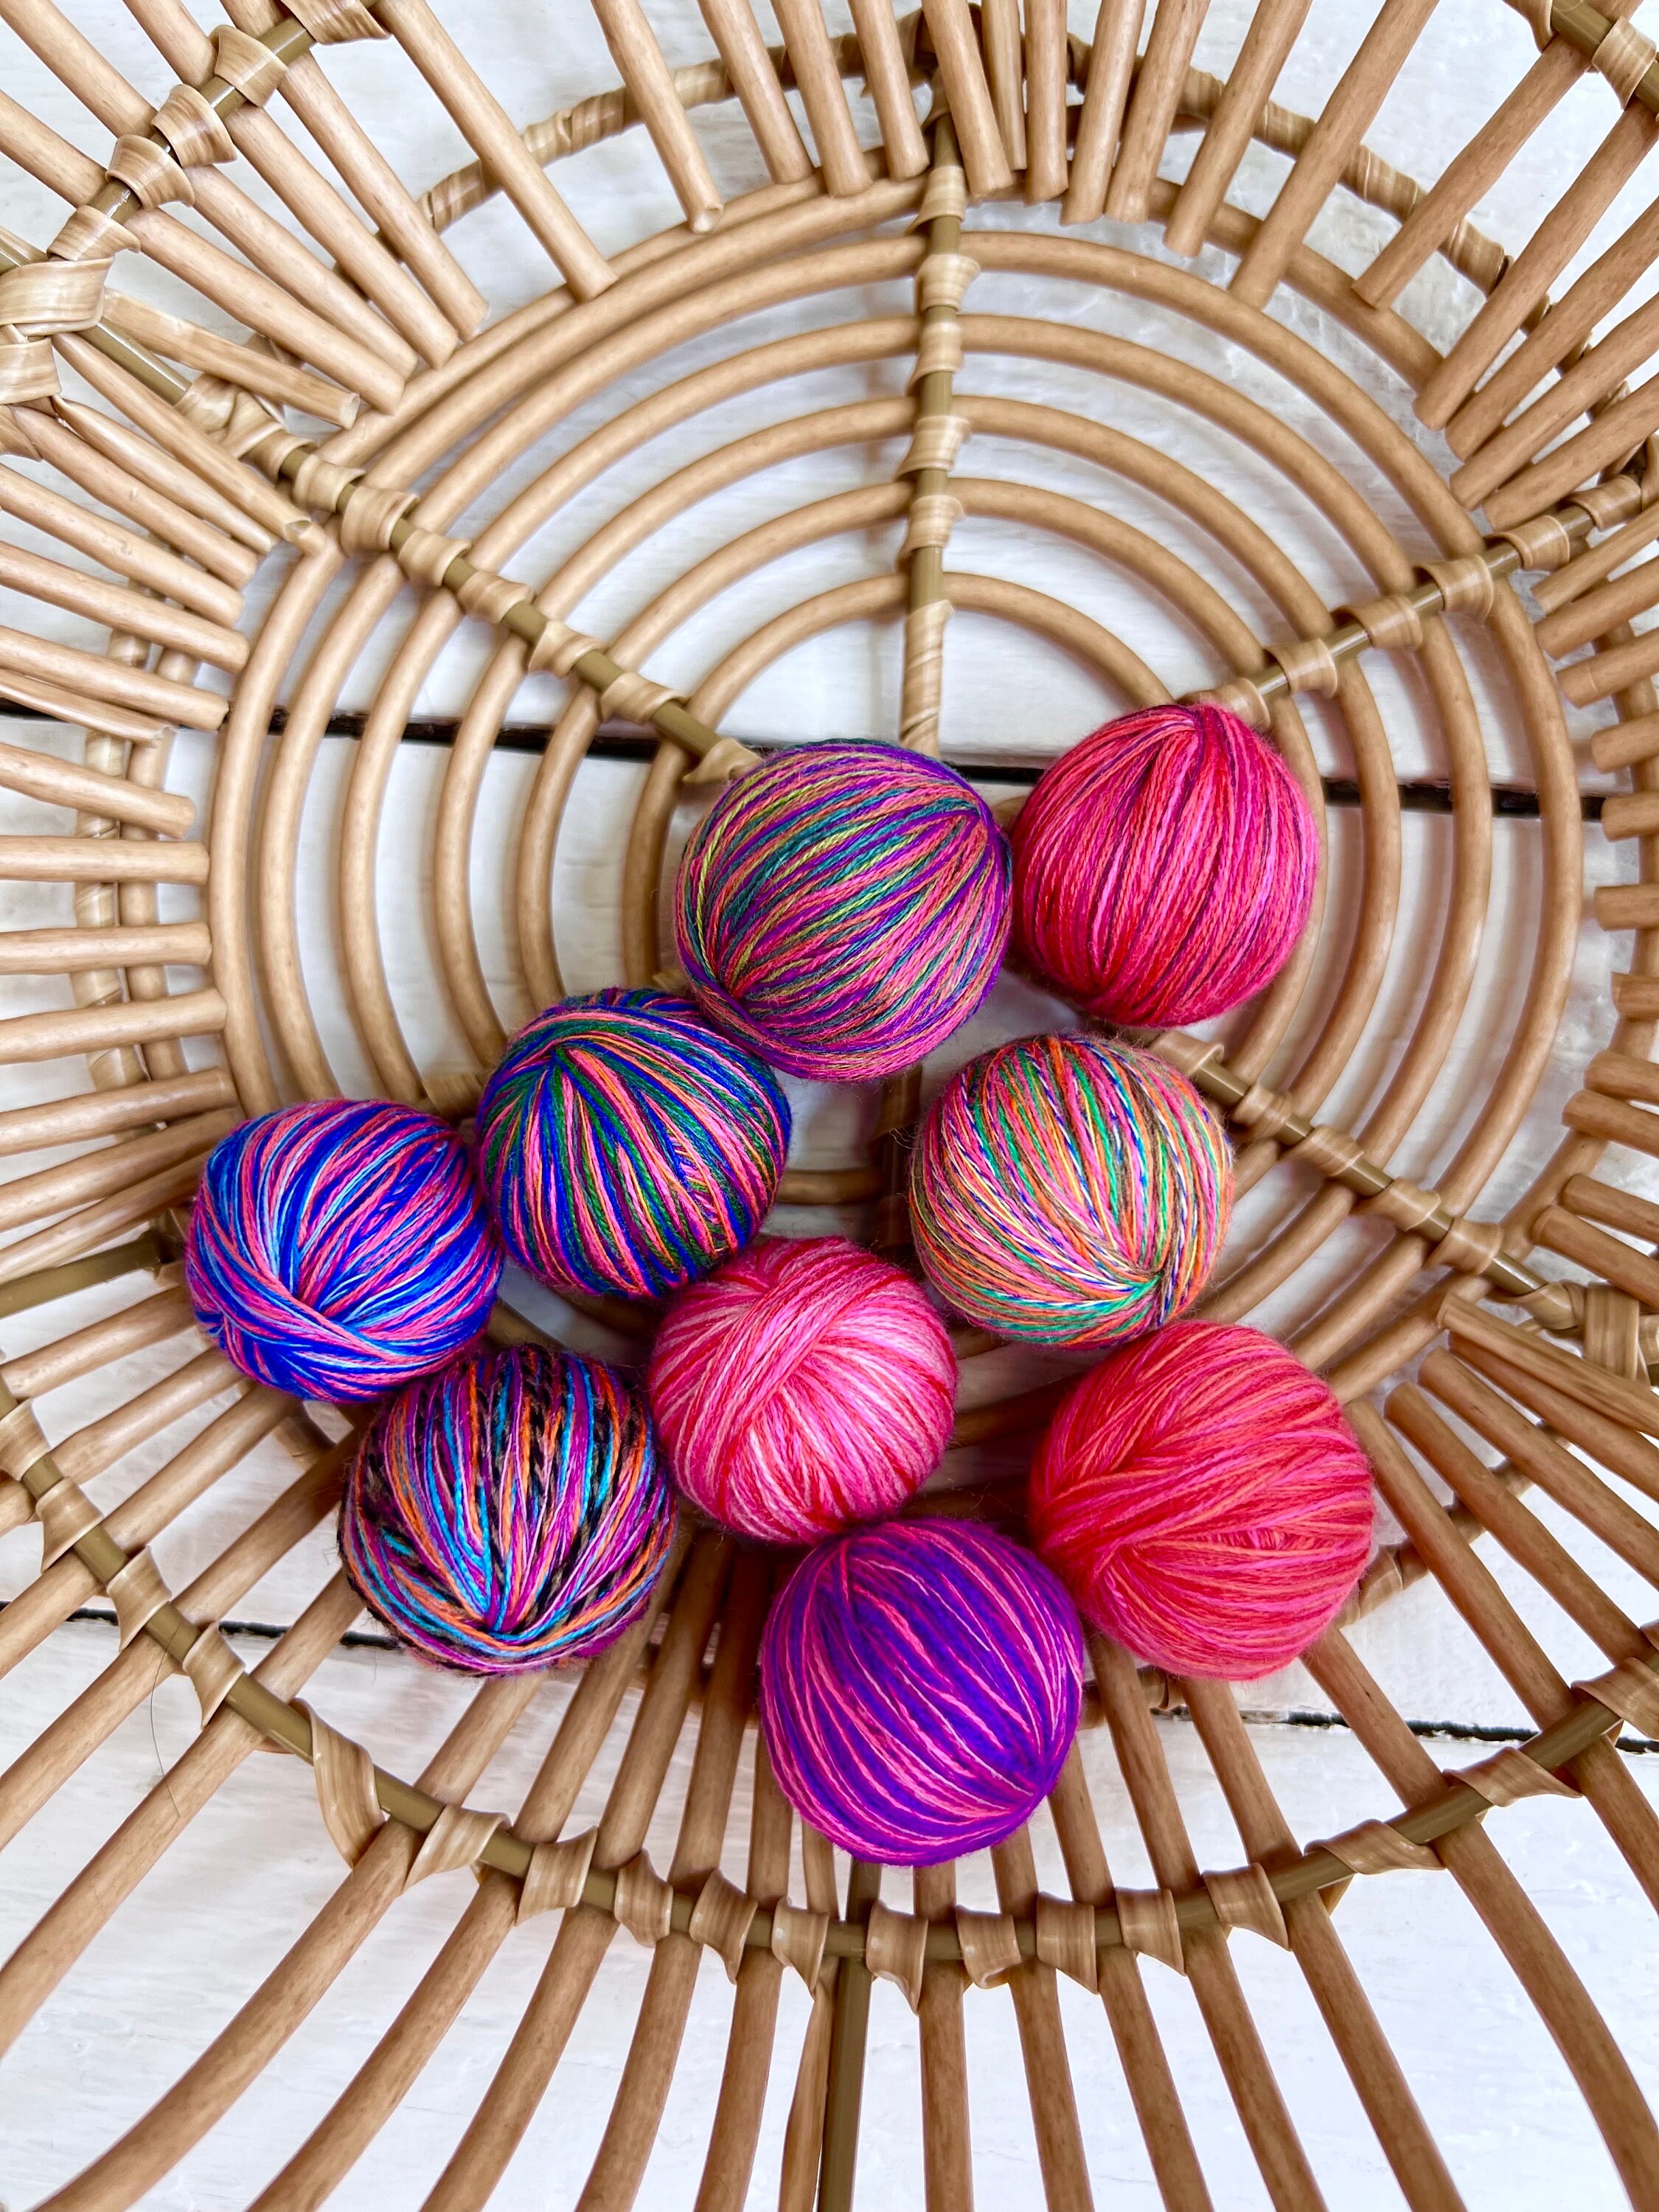 YARN BOX, 800 Grams of Mini Yarn Balls, Handmade Yarn, Multicolor Yarn for  Crafts, Fancy Novelty Yarn, Special Technique Scrap Yarn © 